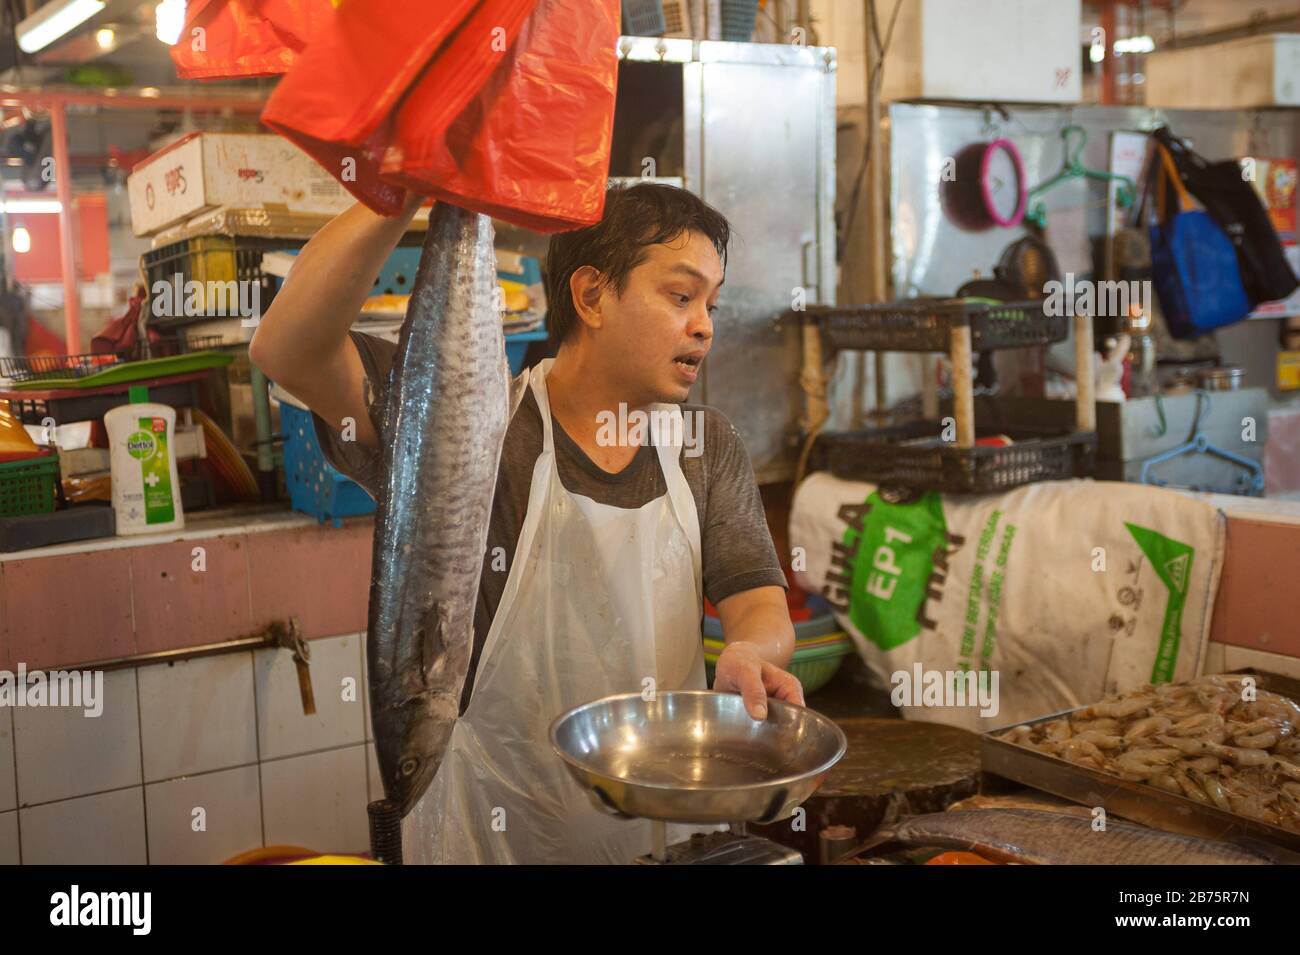 27.07.2017, Singapour, République de Singapour, Asie - un vendeur de poissons sur le marché de Chinatown. [traduction automatique] Banque D'Images